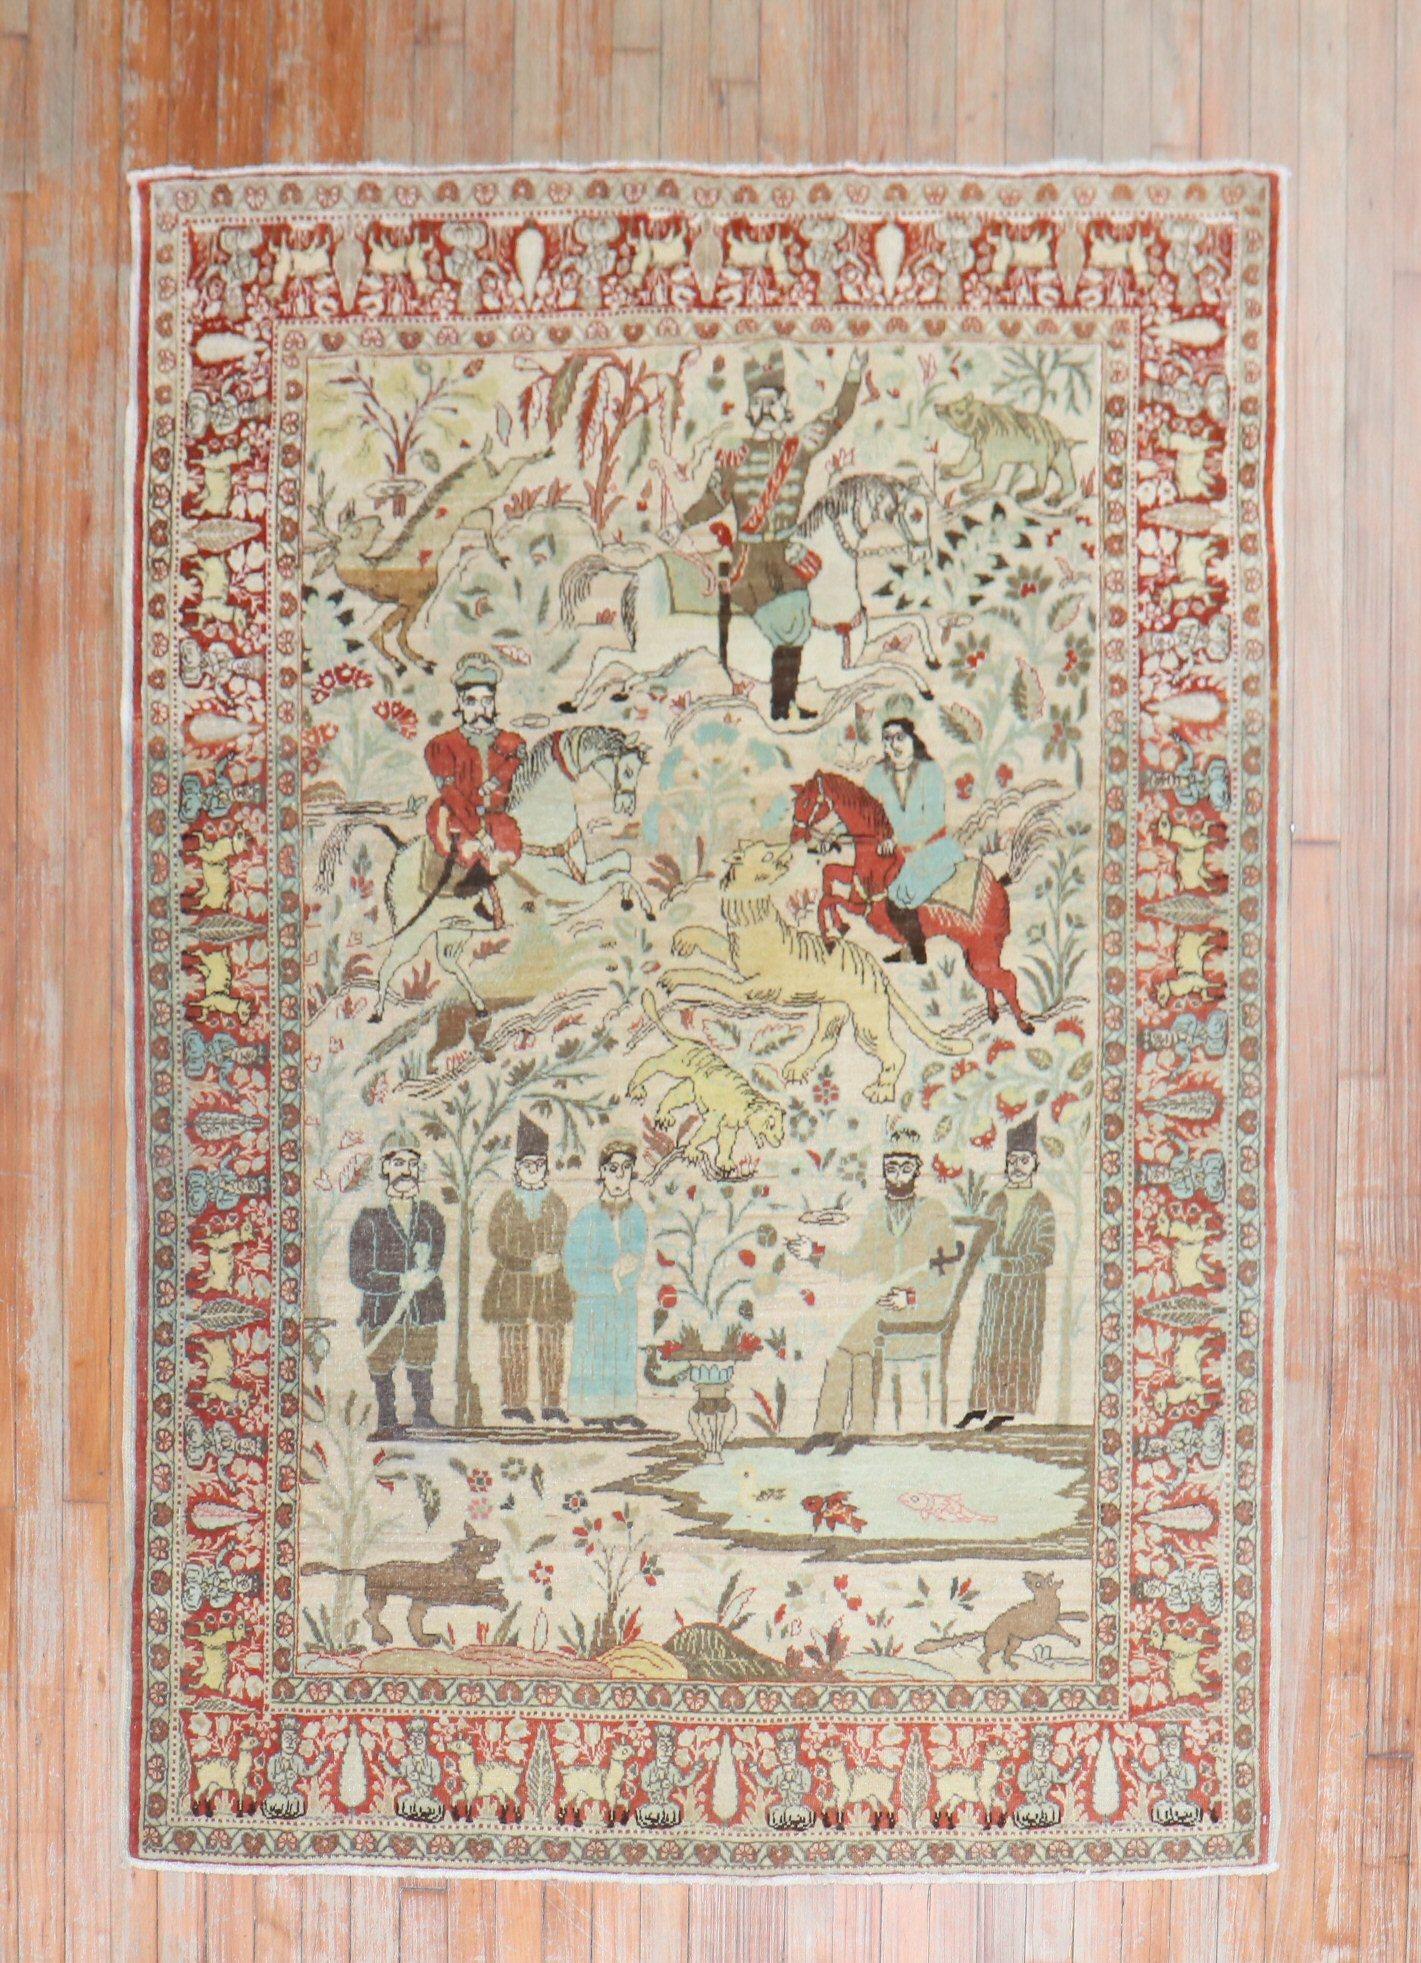 Tapis Tabriz Persan ancien de taille dispersée avec un motif pictural de chasse d'animaux du 1er quart du 20ème siècle.

Mesures : 4'6'' x 6'.